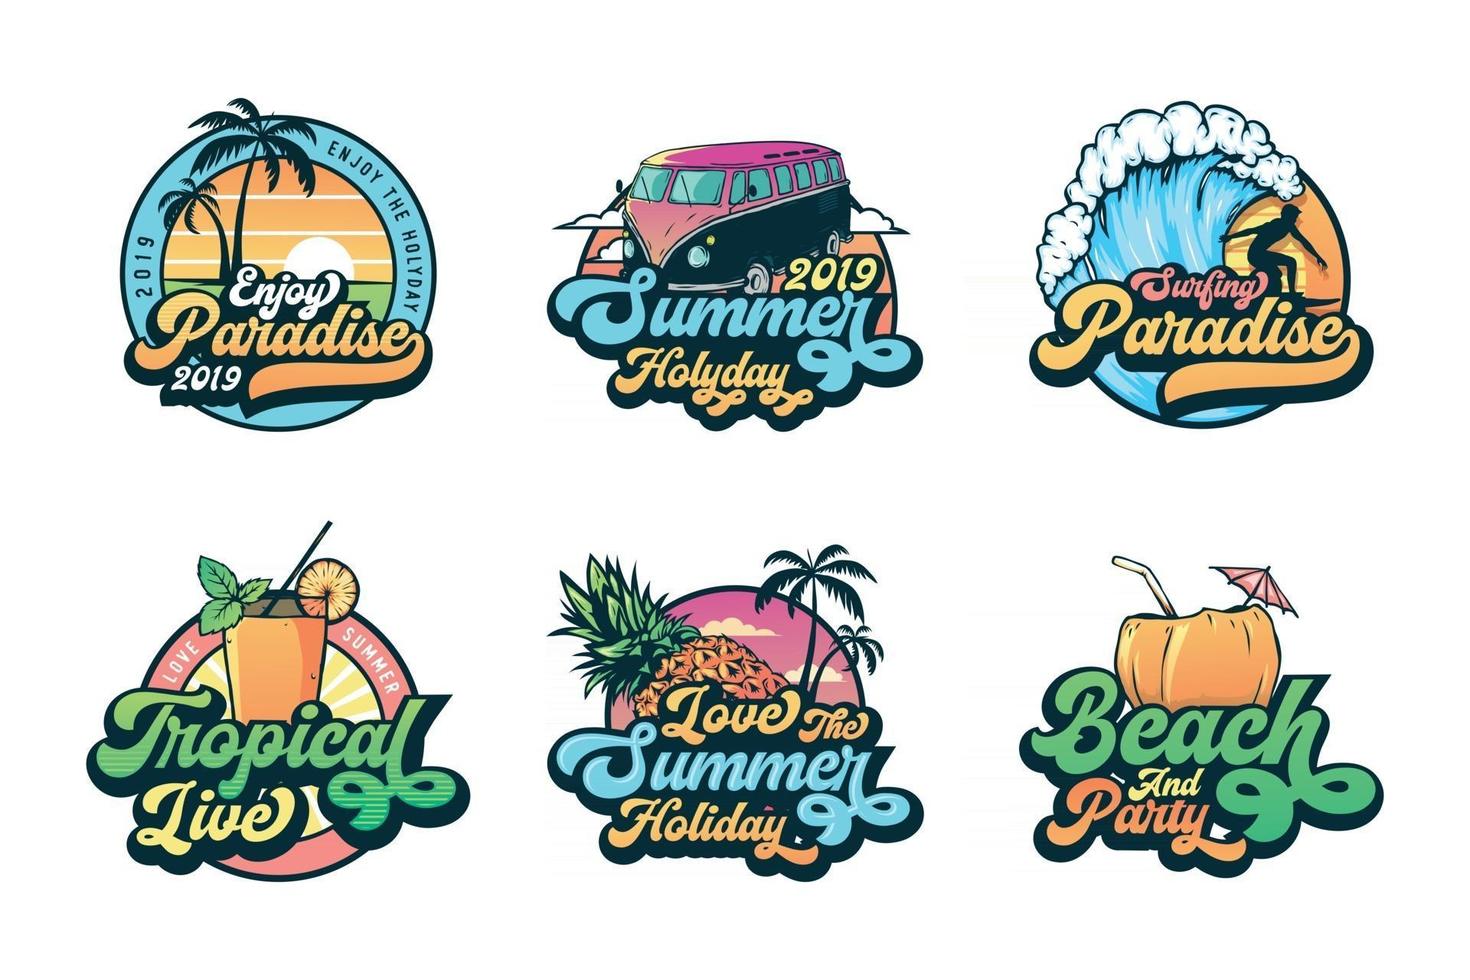 conjunto de etiquetas, emblemas y logotipos de insignias de verano vintage vector